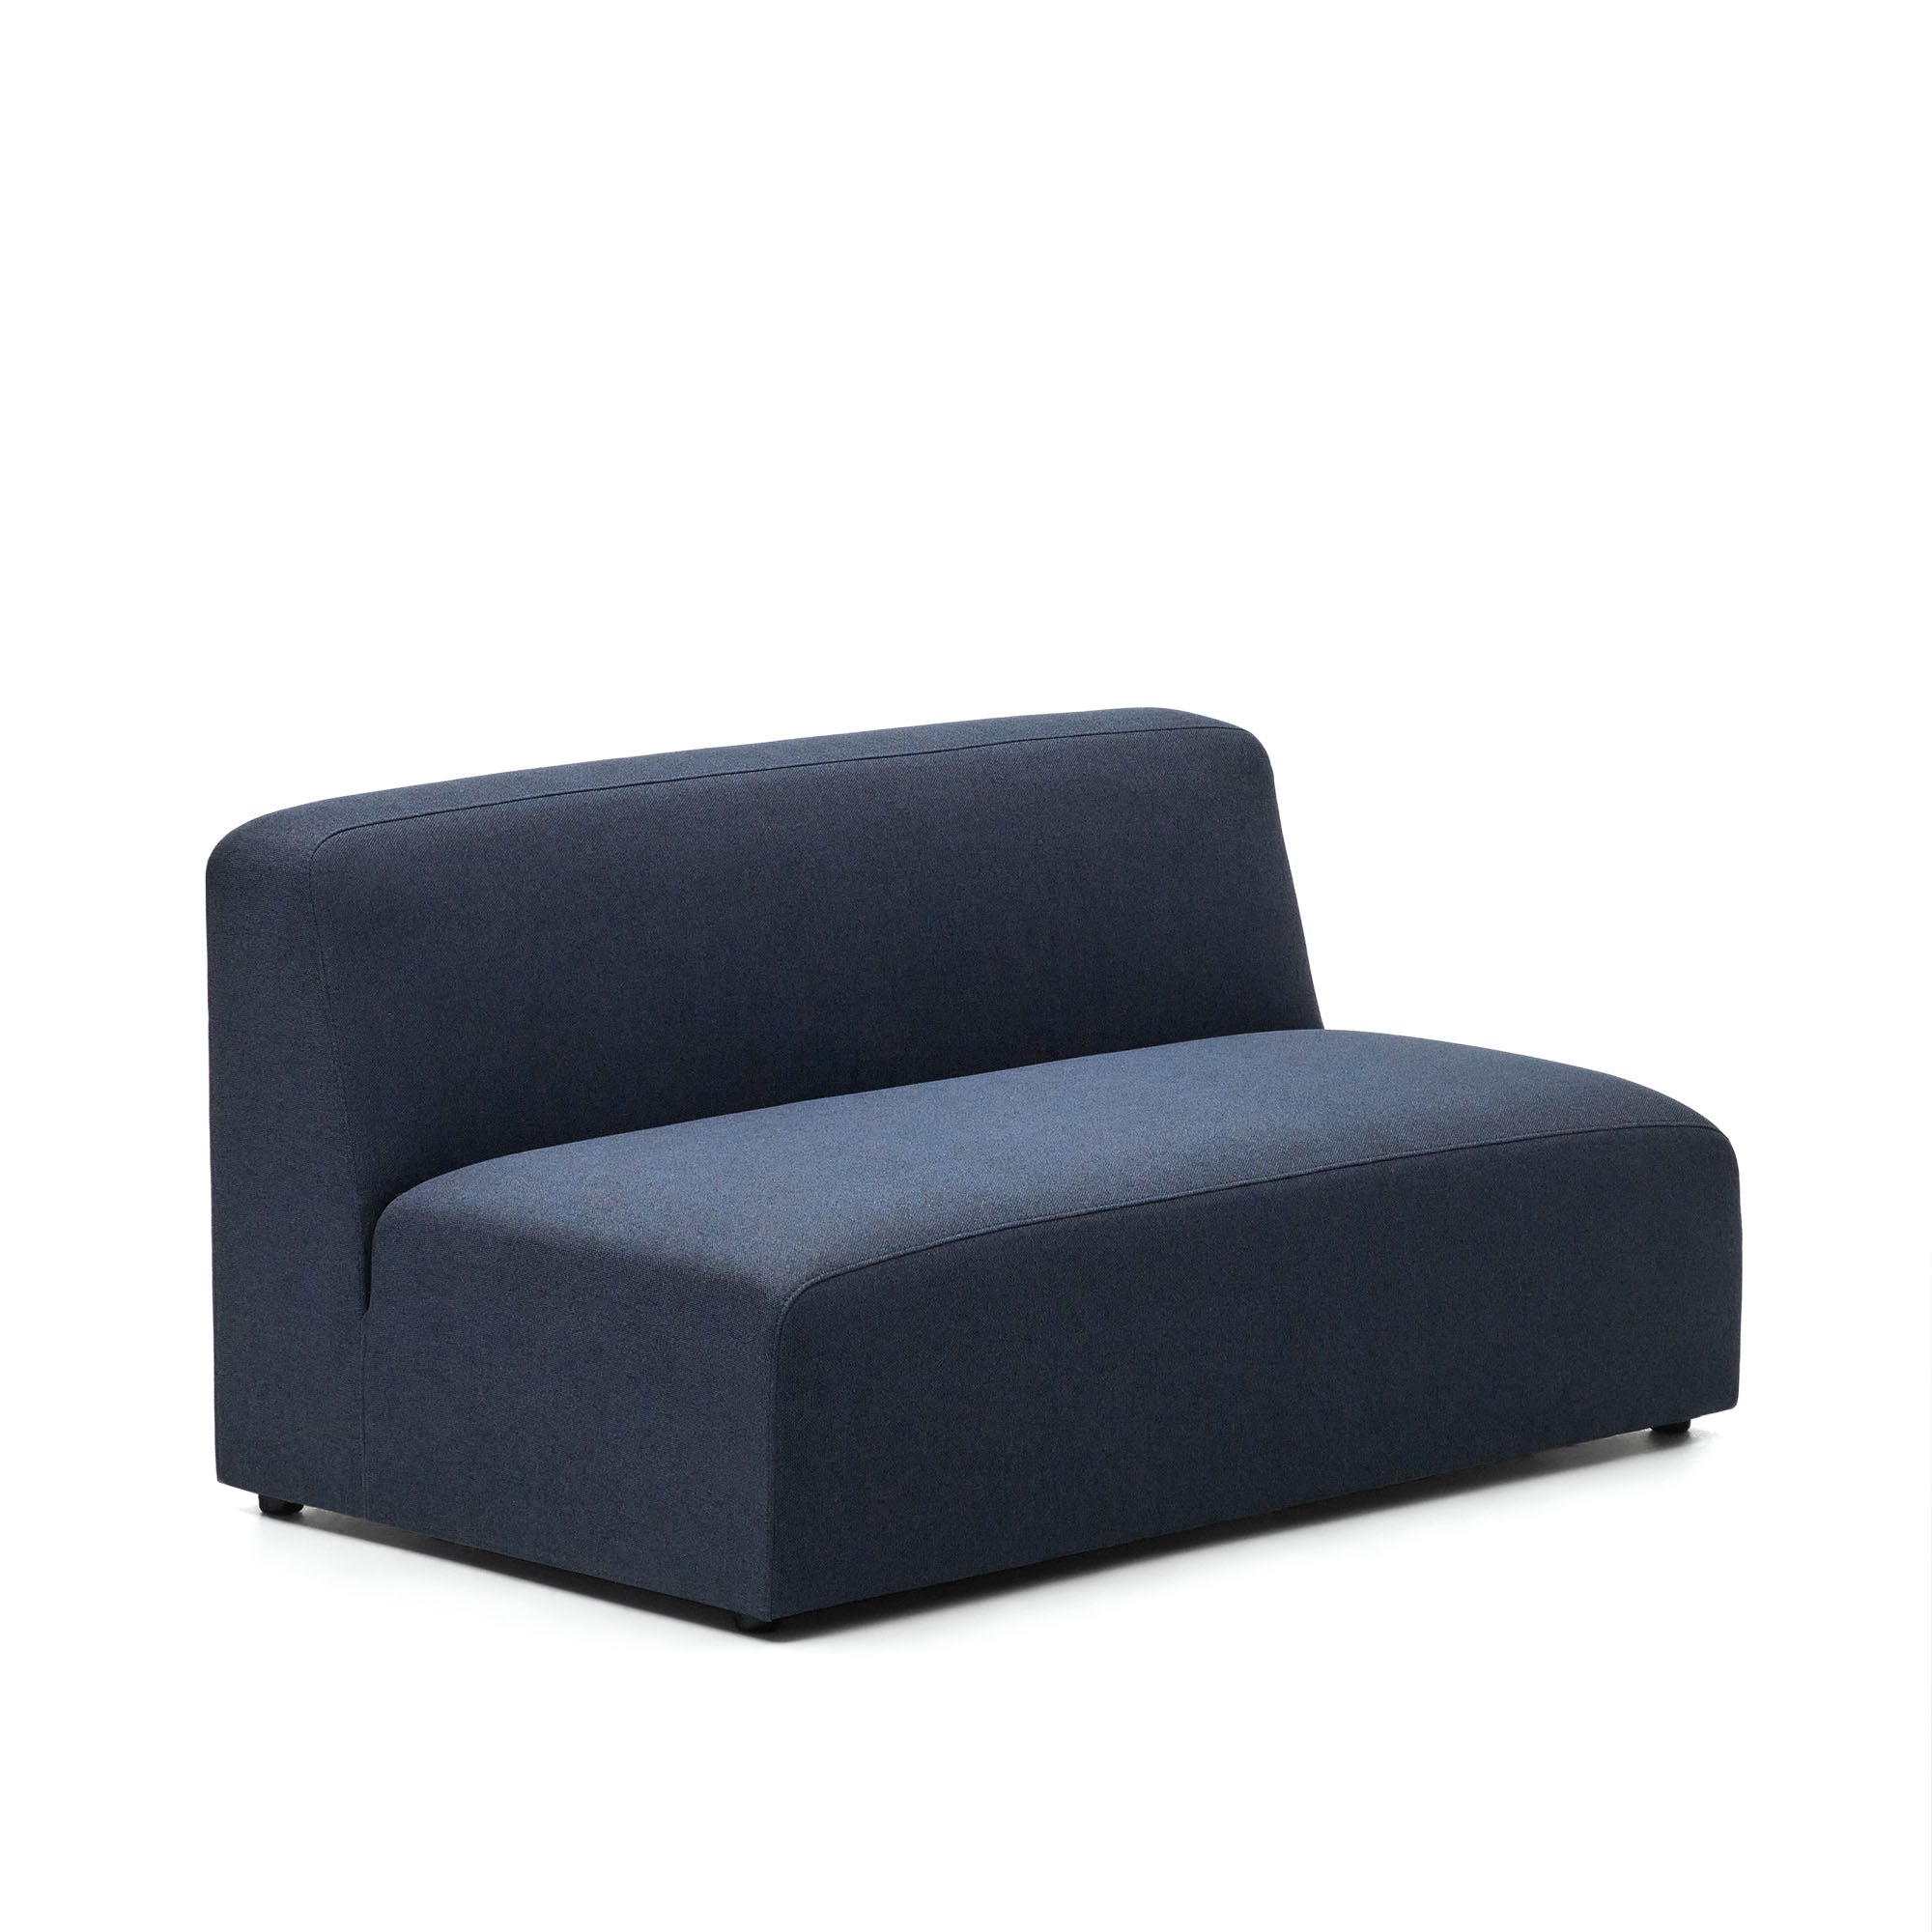 Neom 2 személyes kanapé modul kék színben, 150 cm